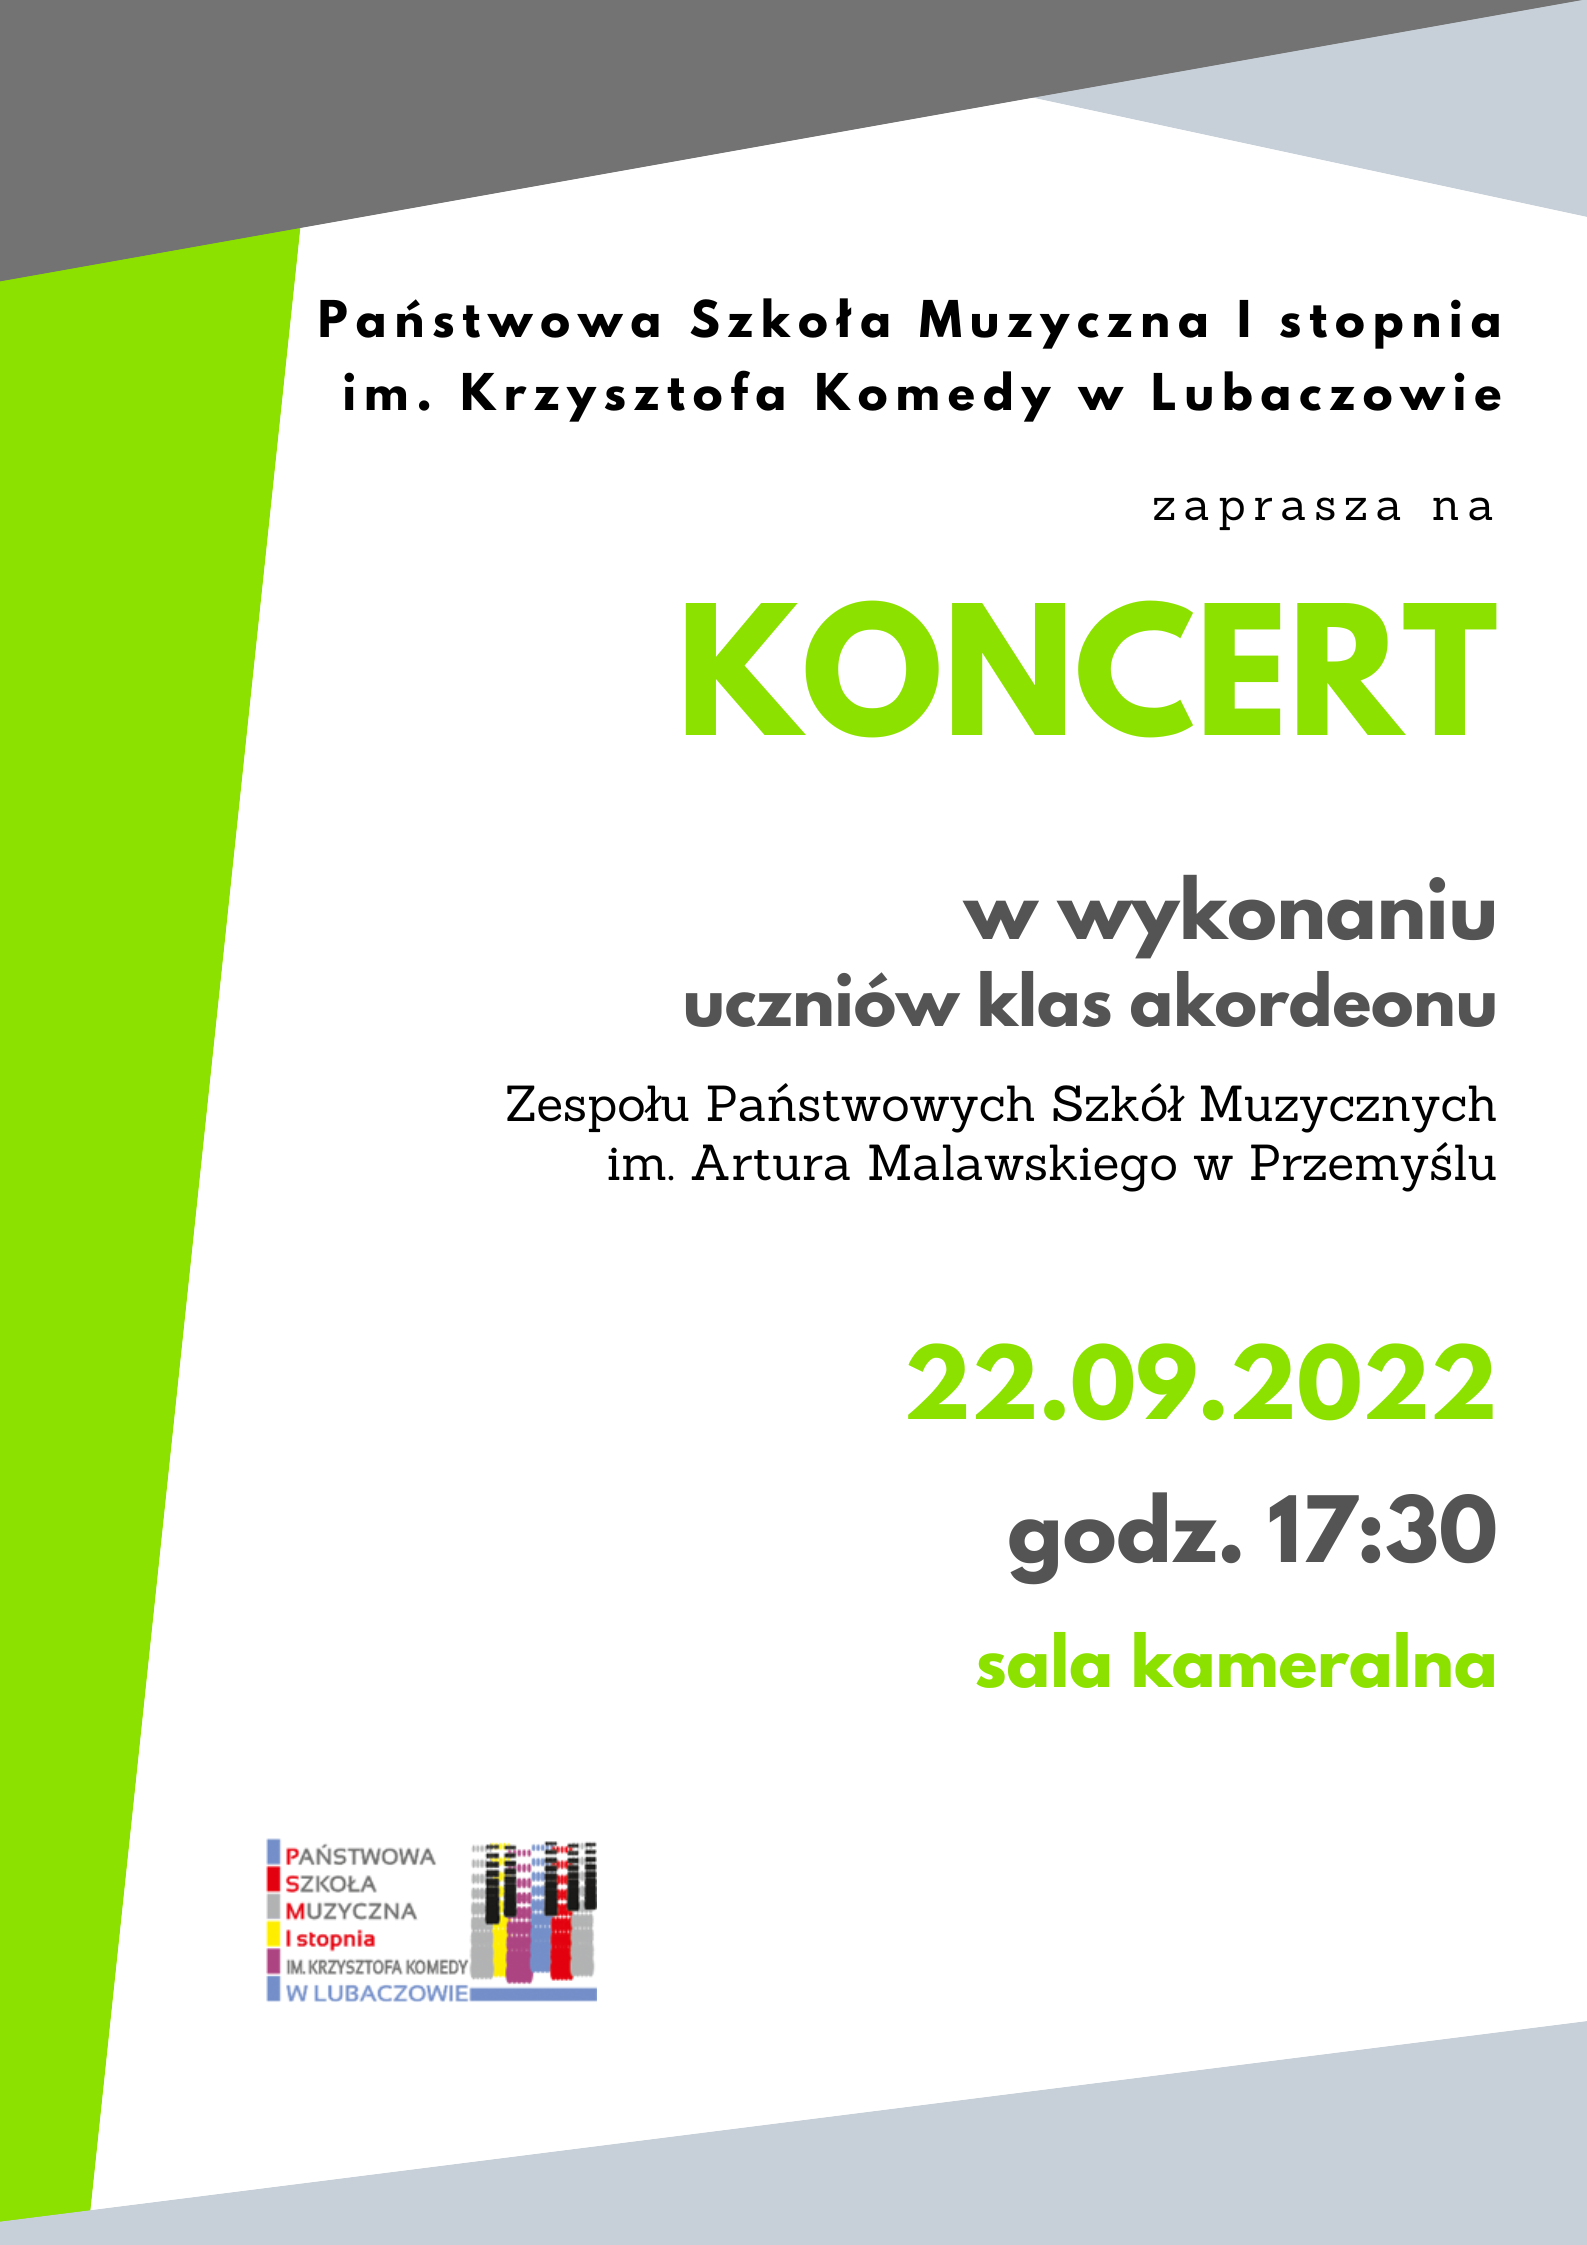 Biały plakat z szaro zielonymi elementami informujący o koncercie w wykonaniu uczniów klas akordeonu ZPSM w Przemyślu w dniu 22.09.2022 o godz. 17:30